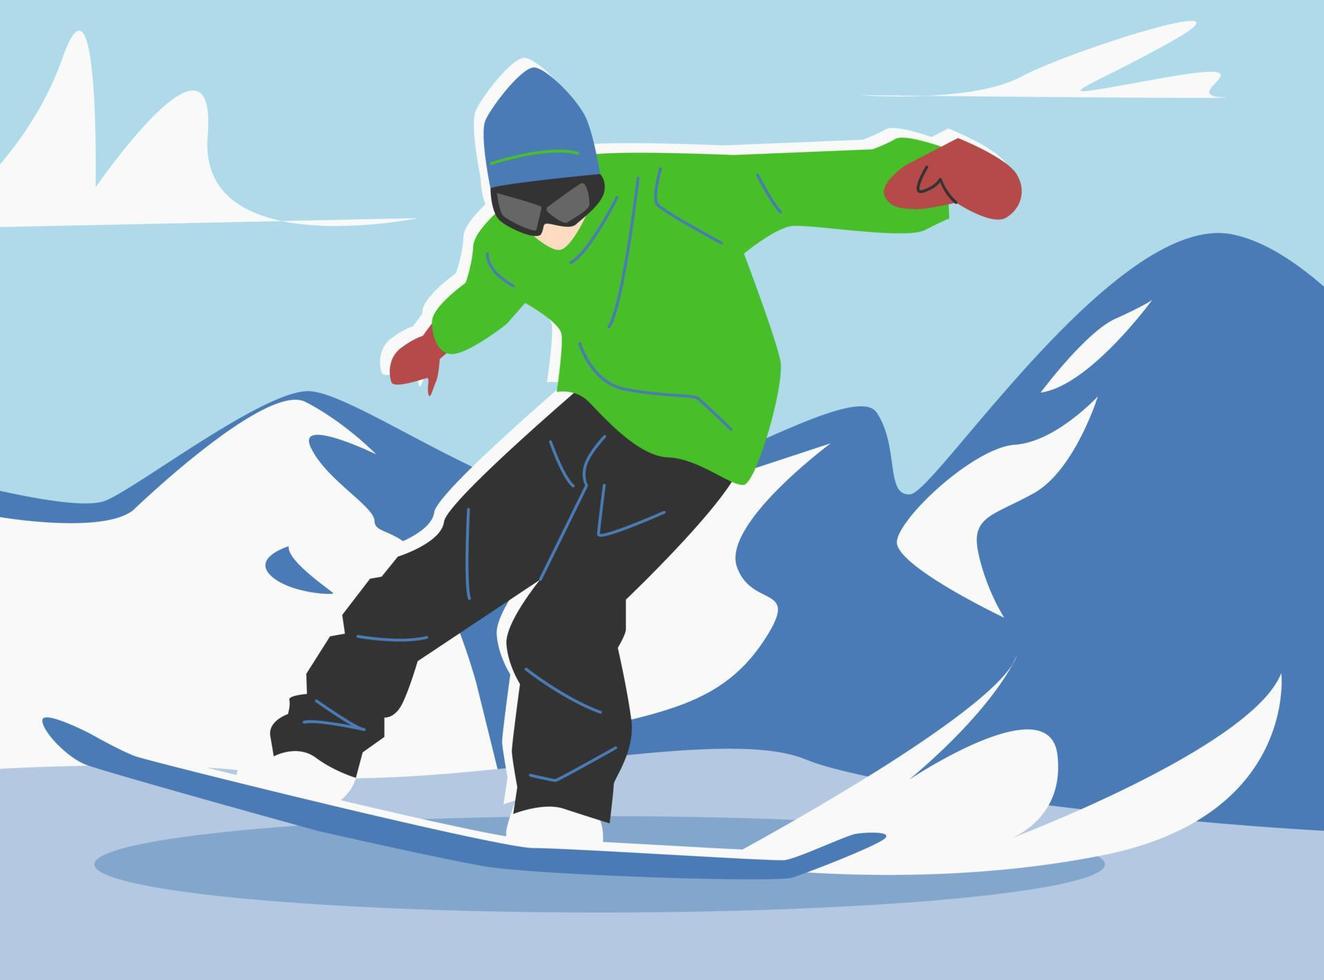 maschio snowboarder giocando Snowboard nel inverno. all'aperto, neve. inverno tema, sport, passatempo, attività. nevoso montagna sfondo. vettore piatto illustrazione.